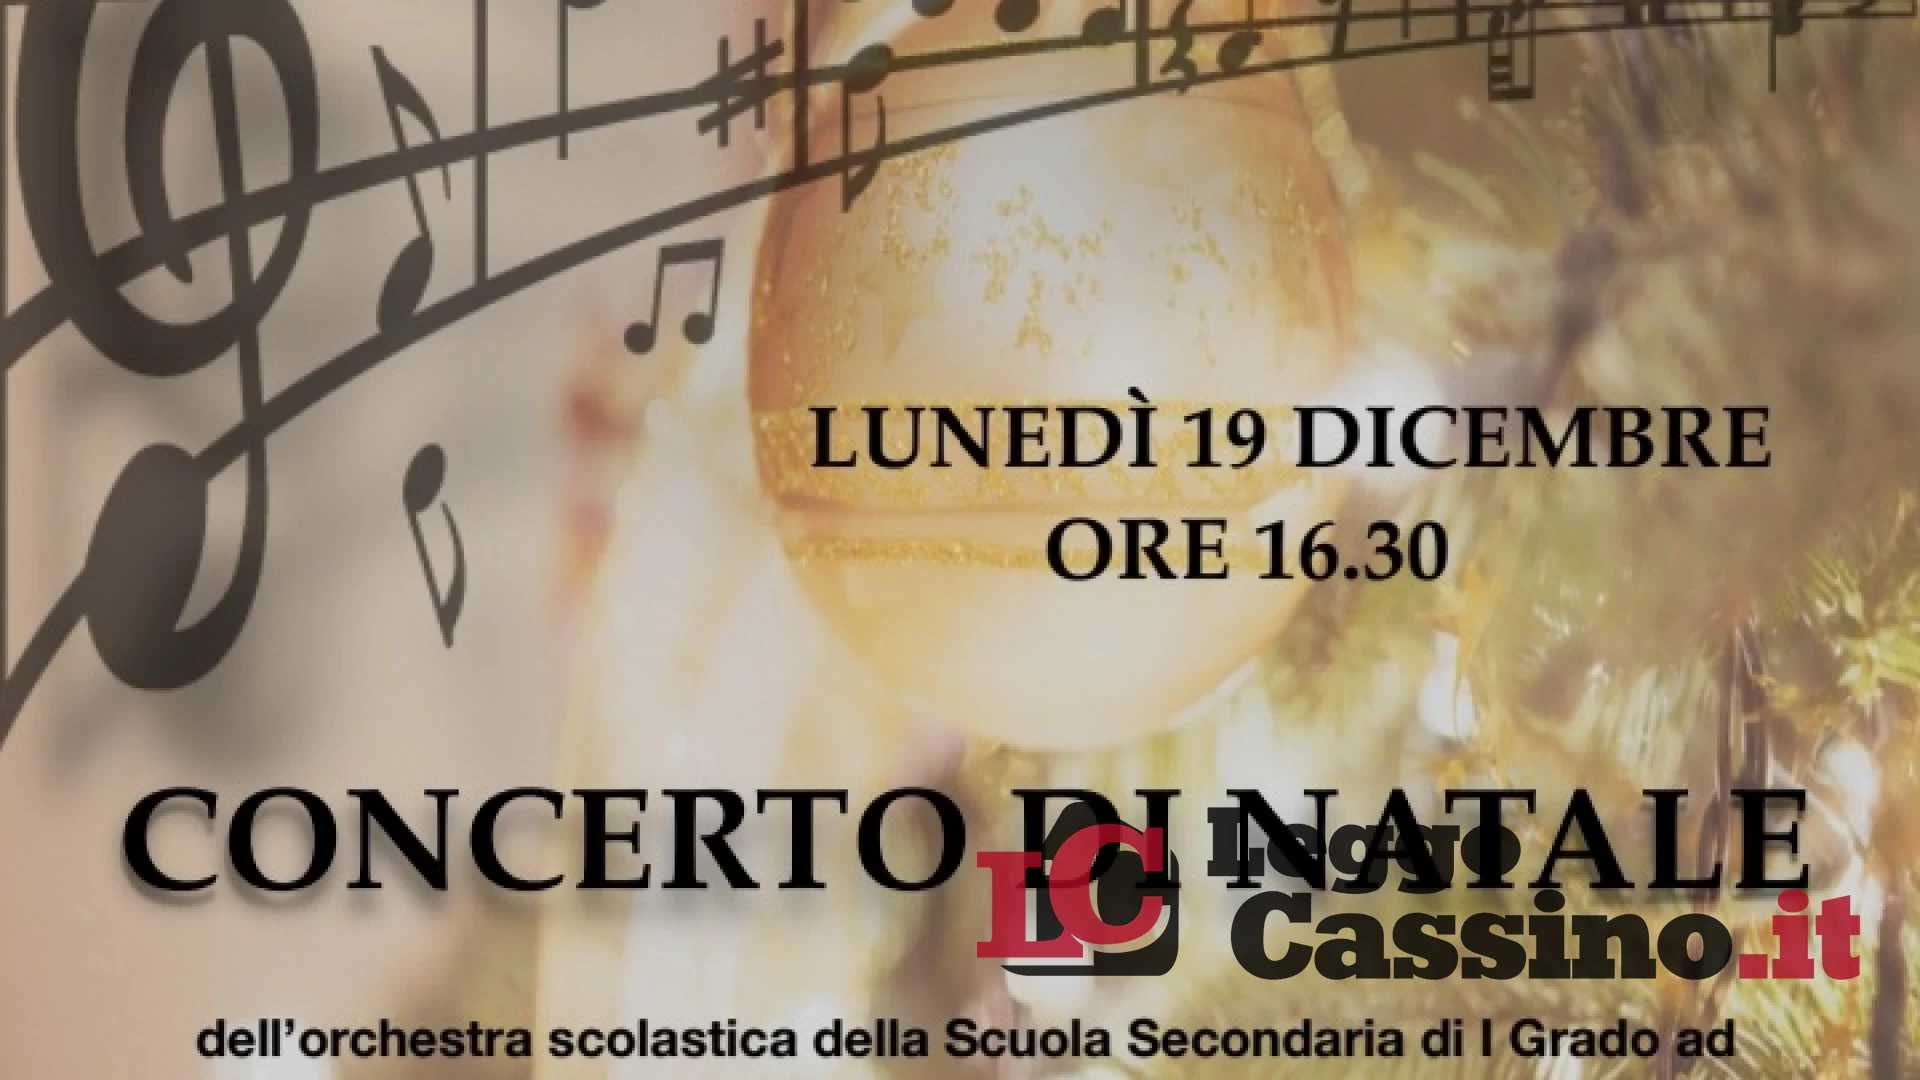 L'Istituto Comprensivo Cassino 3 organizza il concerto di Natale presso l'auditorium del liceo Varrone